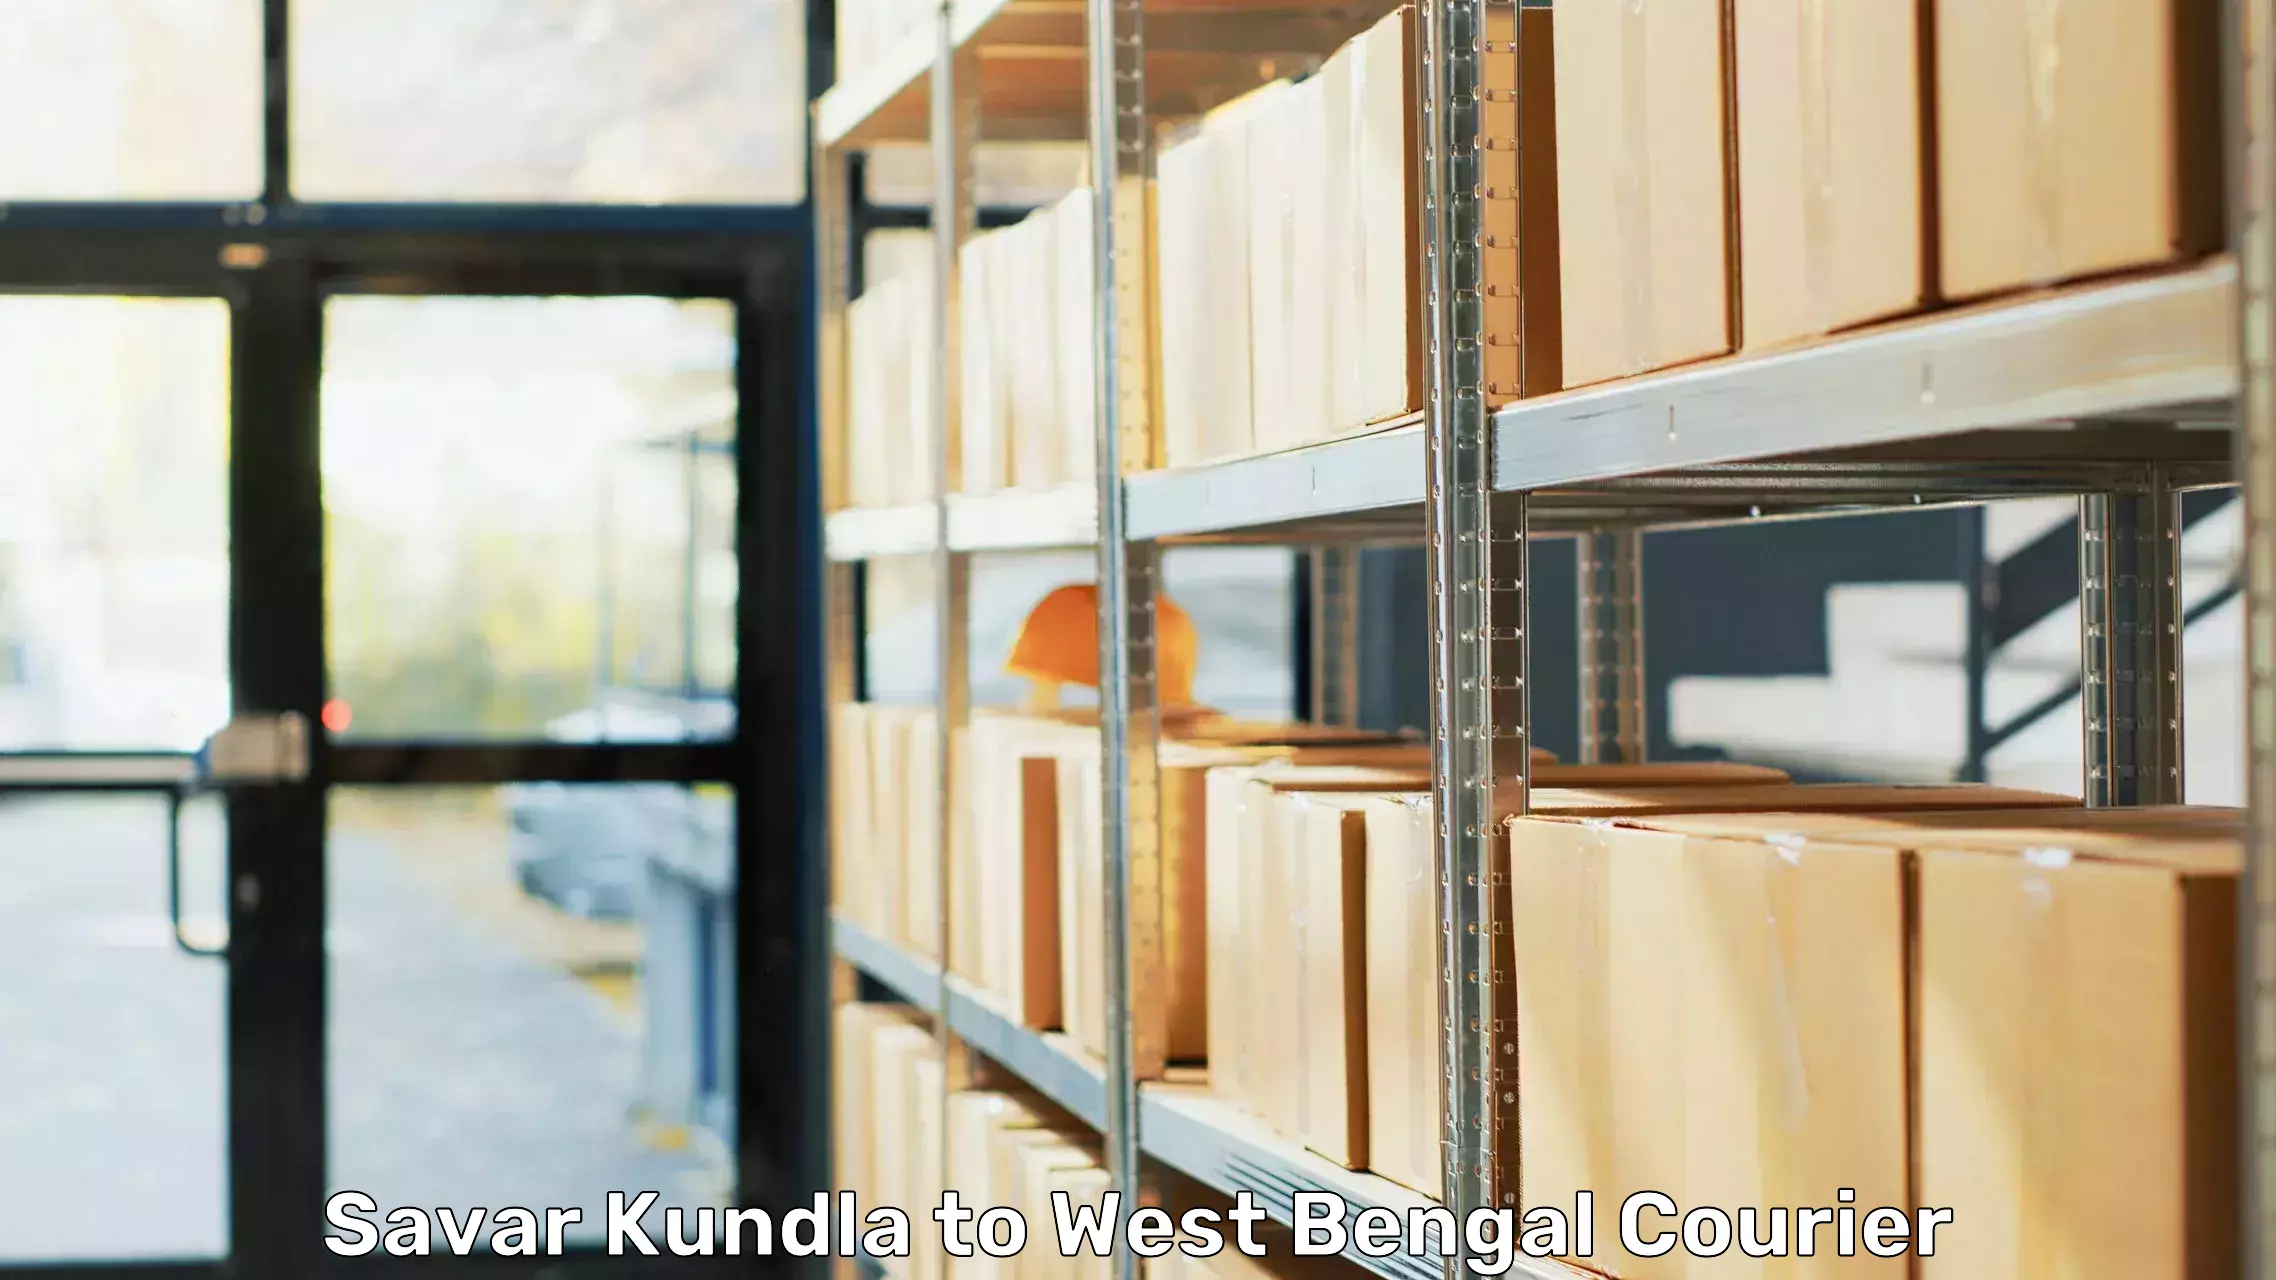 Professional furniture movers Savar Kundla to Purba Medinipur